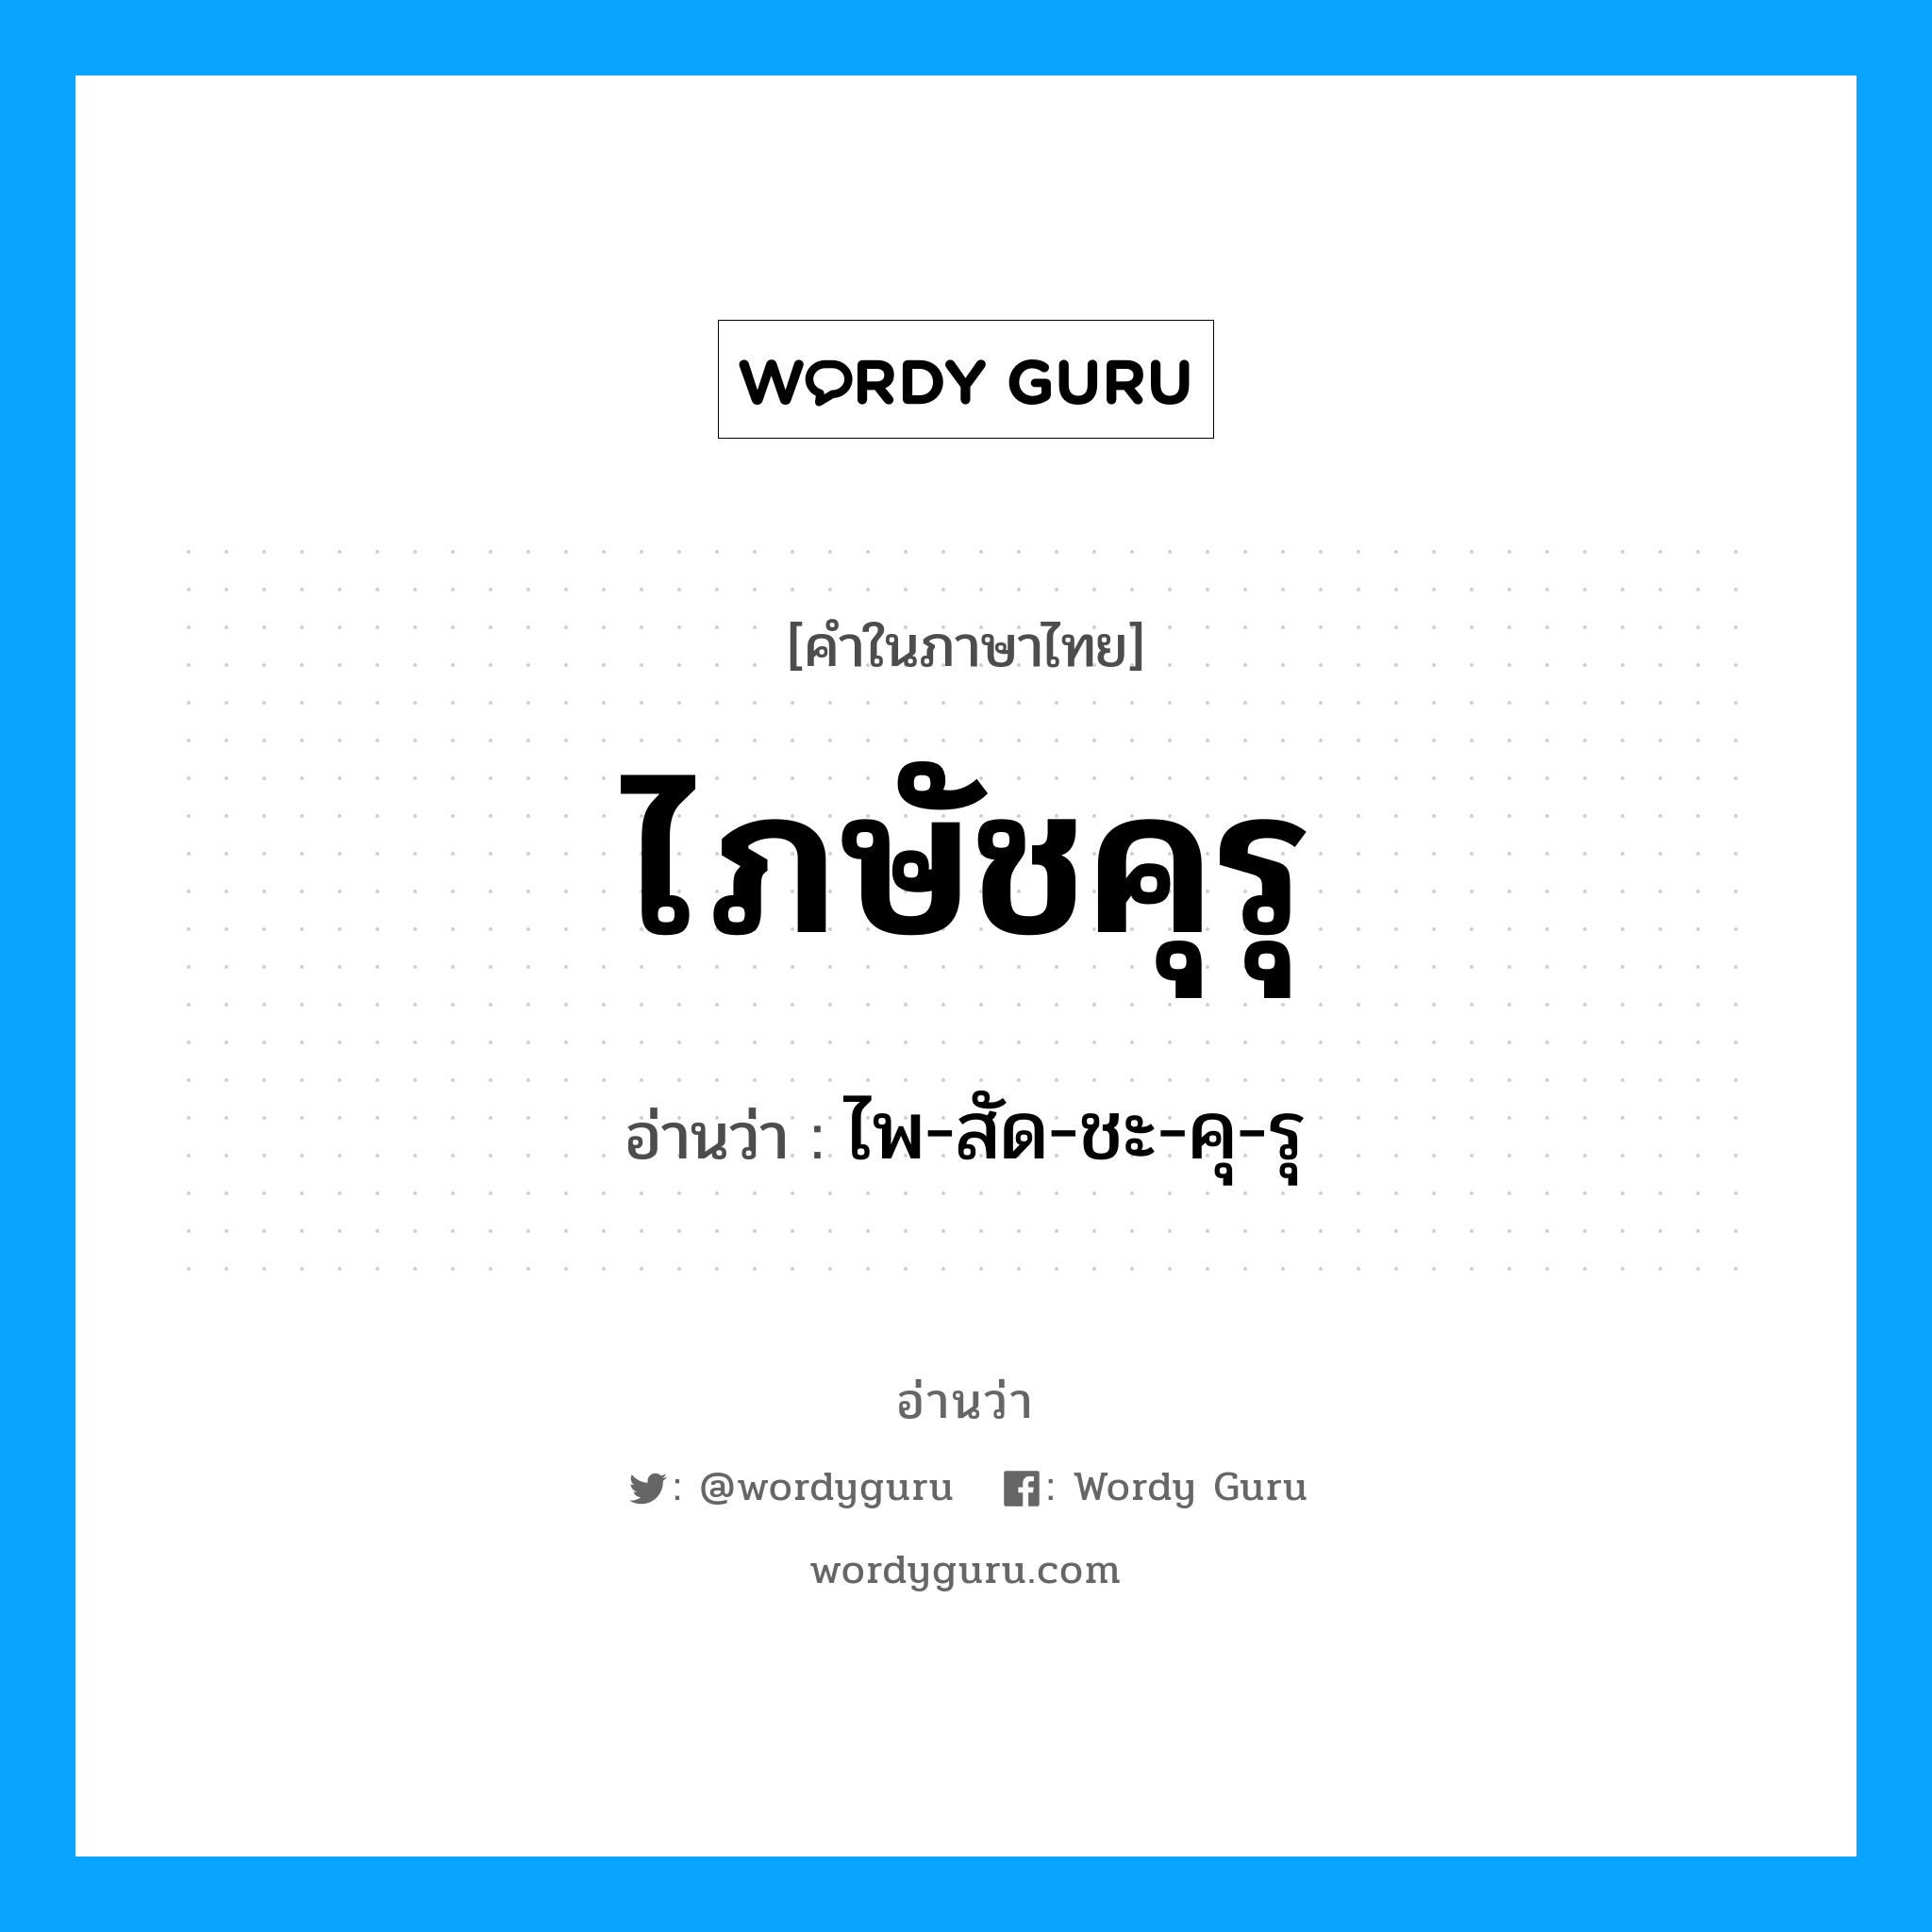 ไพ-สัด-ชะ-คุ-รุ เป็นคำอ่านของคำไหน?, คำในภาษาไทย ไพ-สัด-ชะ-คุ-รุ อ่านว่า ไภษัชคุรุ